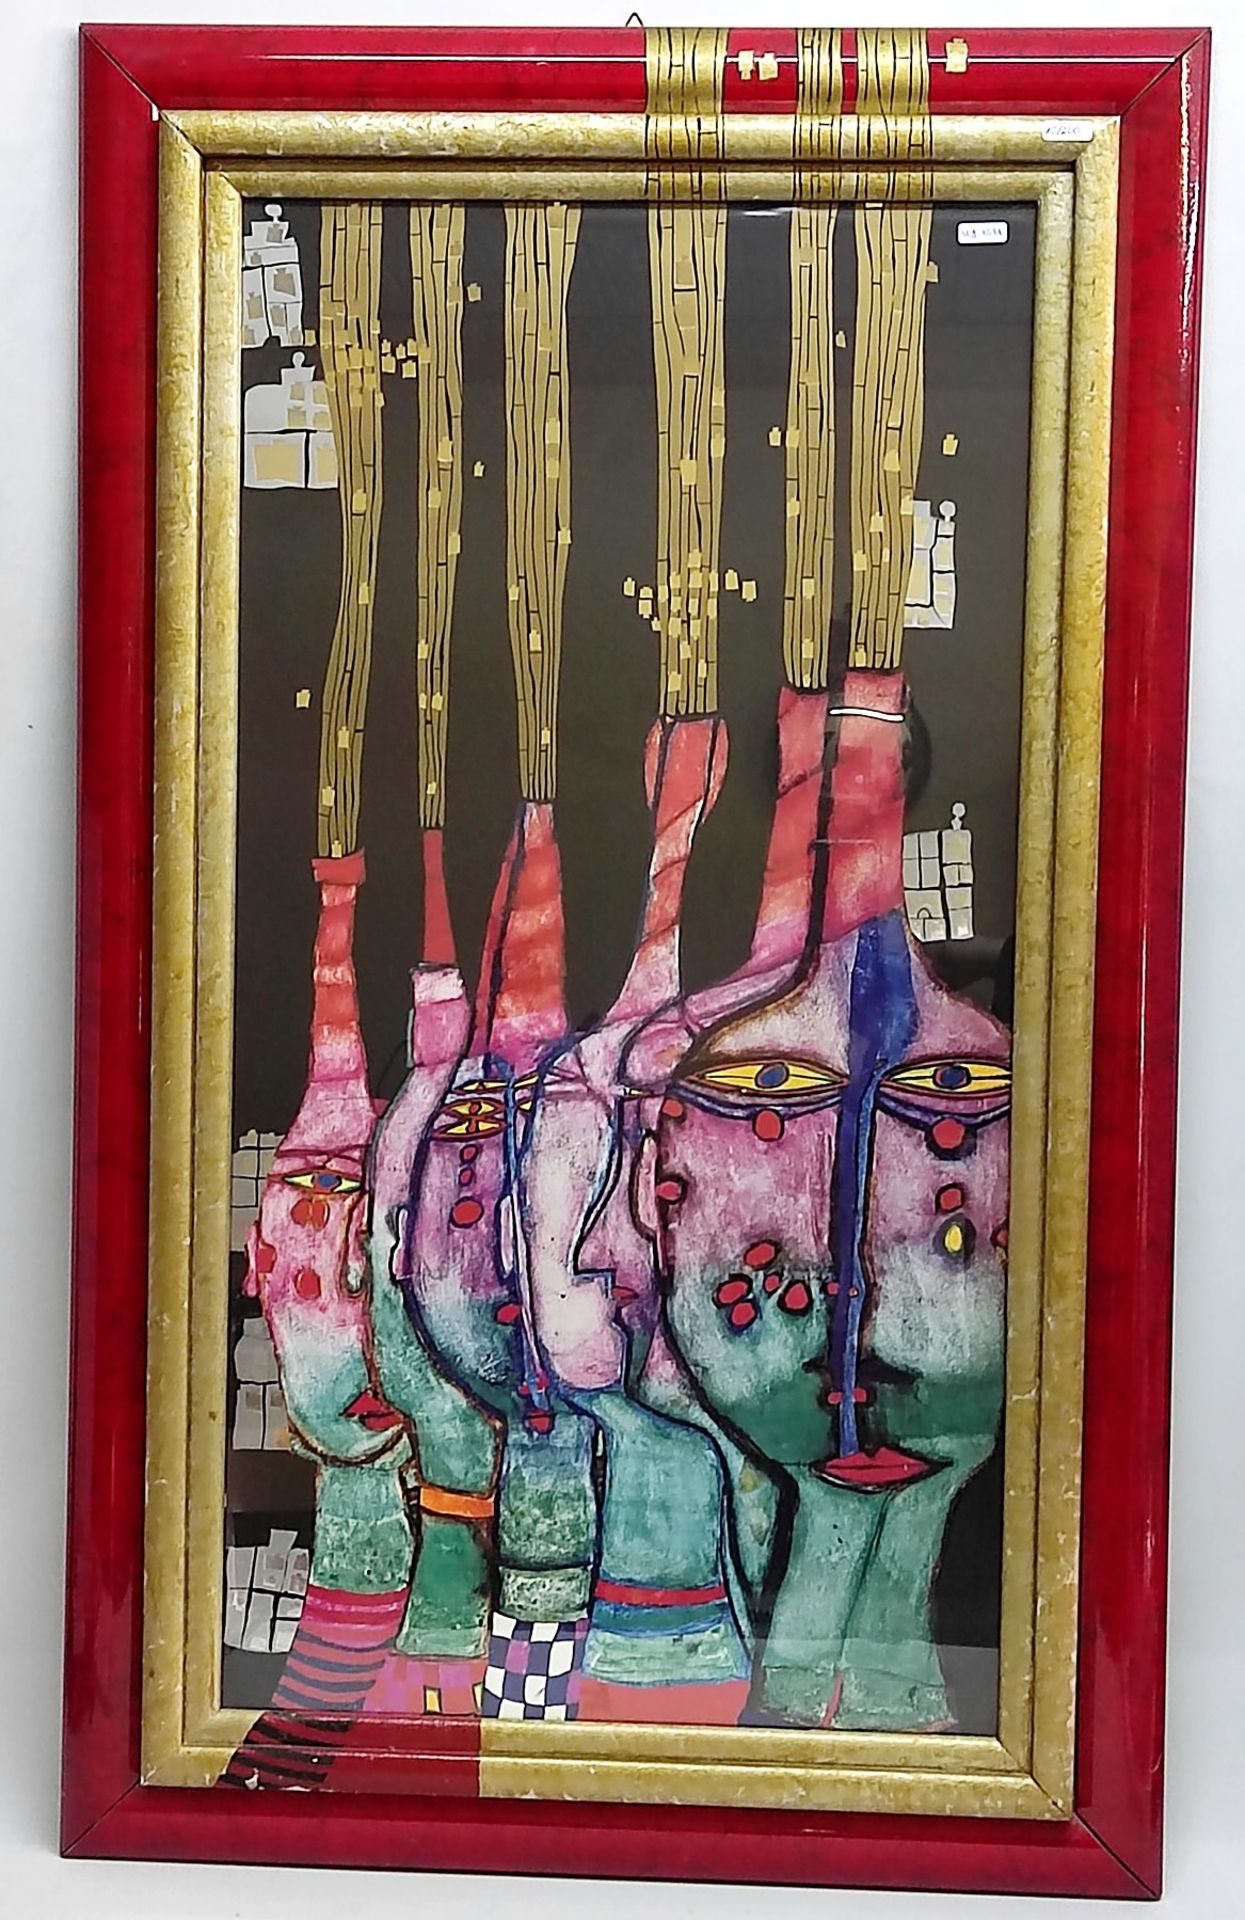 Hundertwasser (1928 - 2000) Kunstdruck mit Metallprägungen